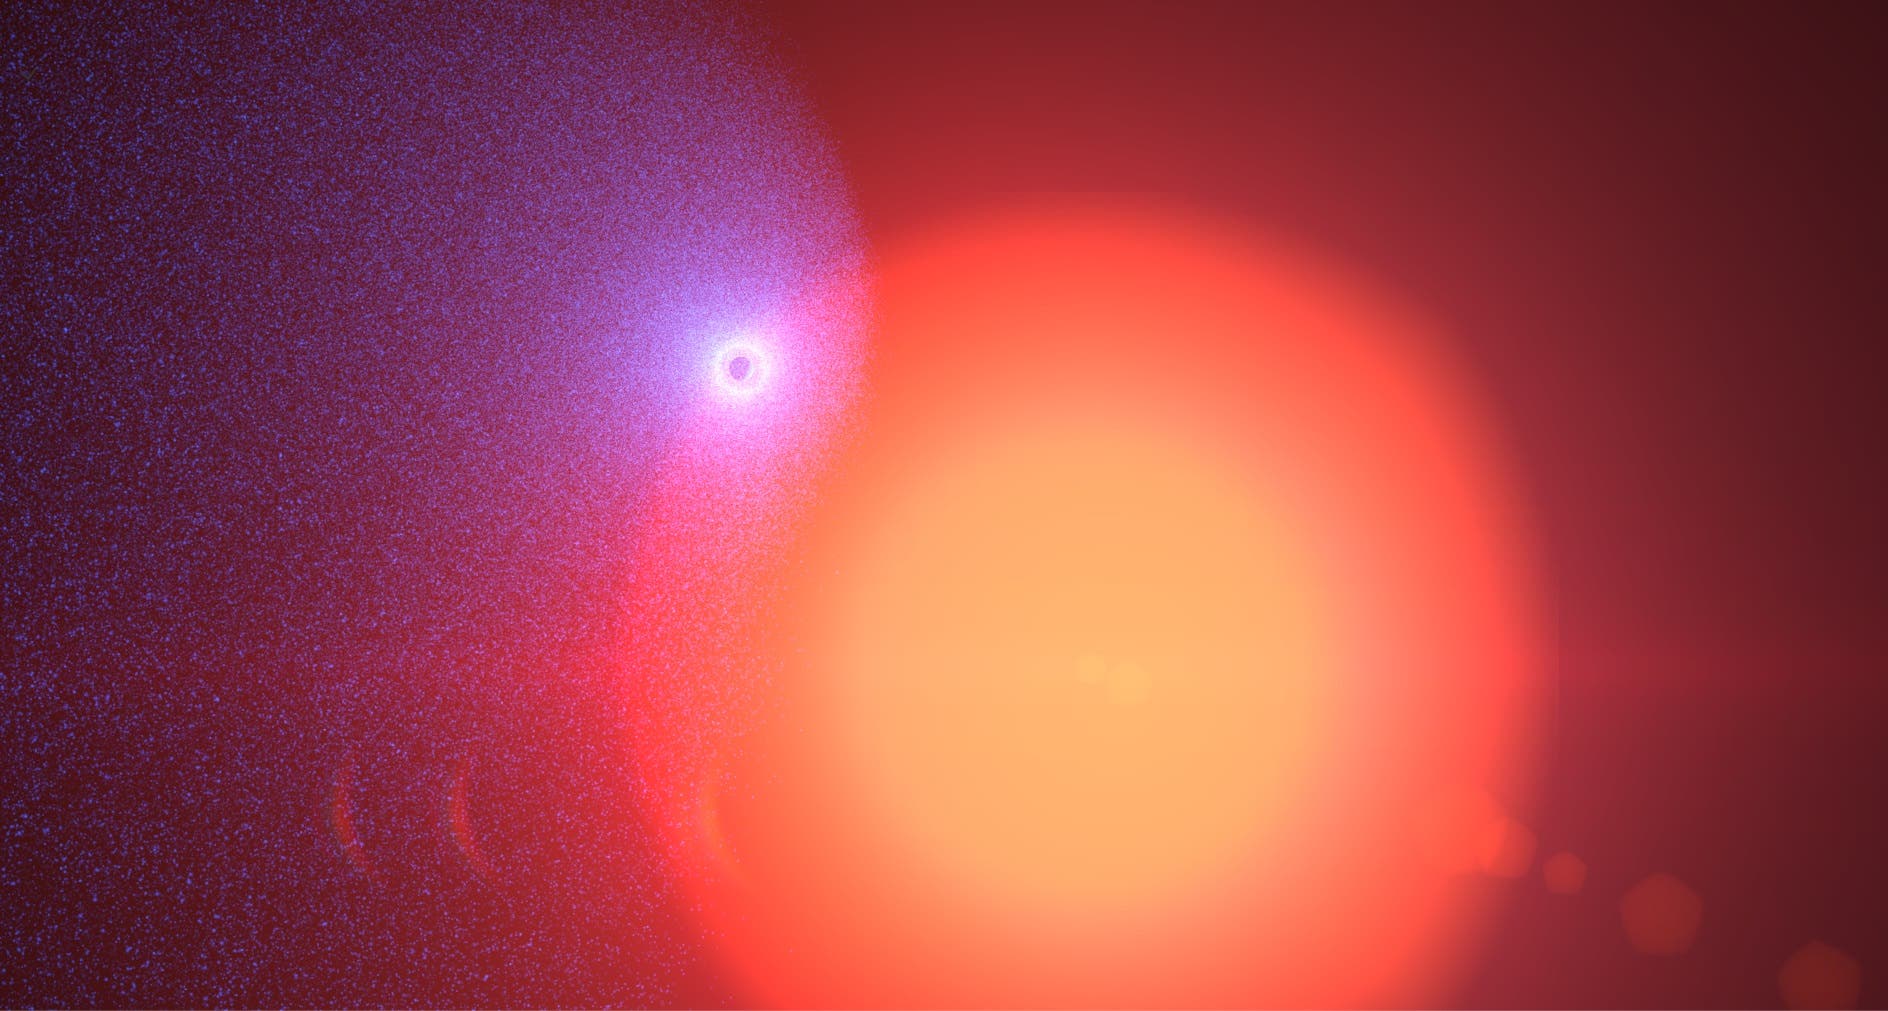 Der Exoplanet GJ 436b (künstlerische Darstellung)